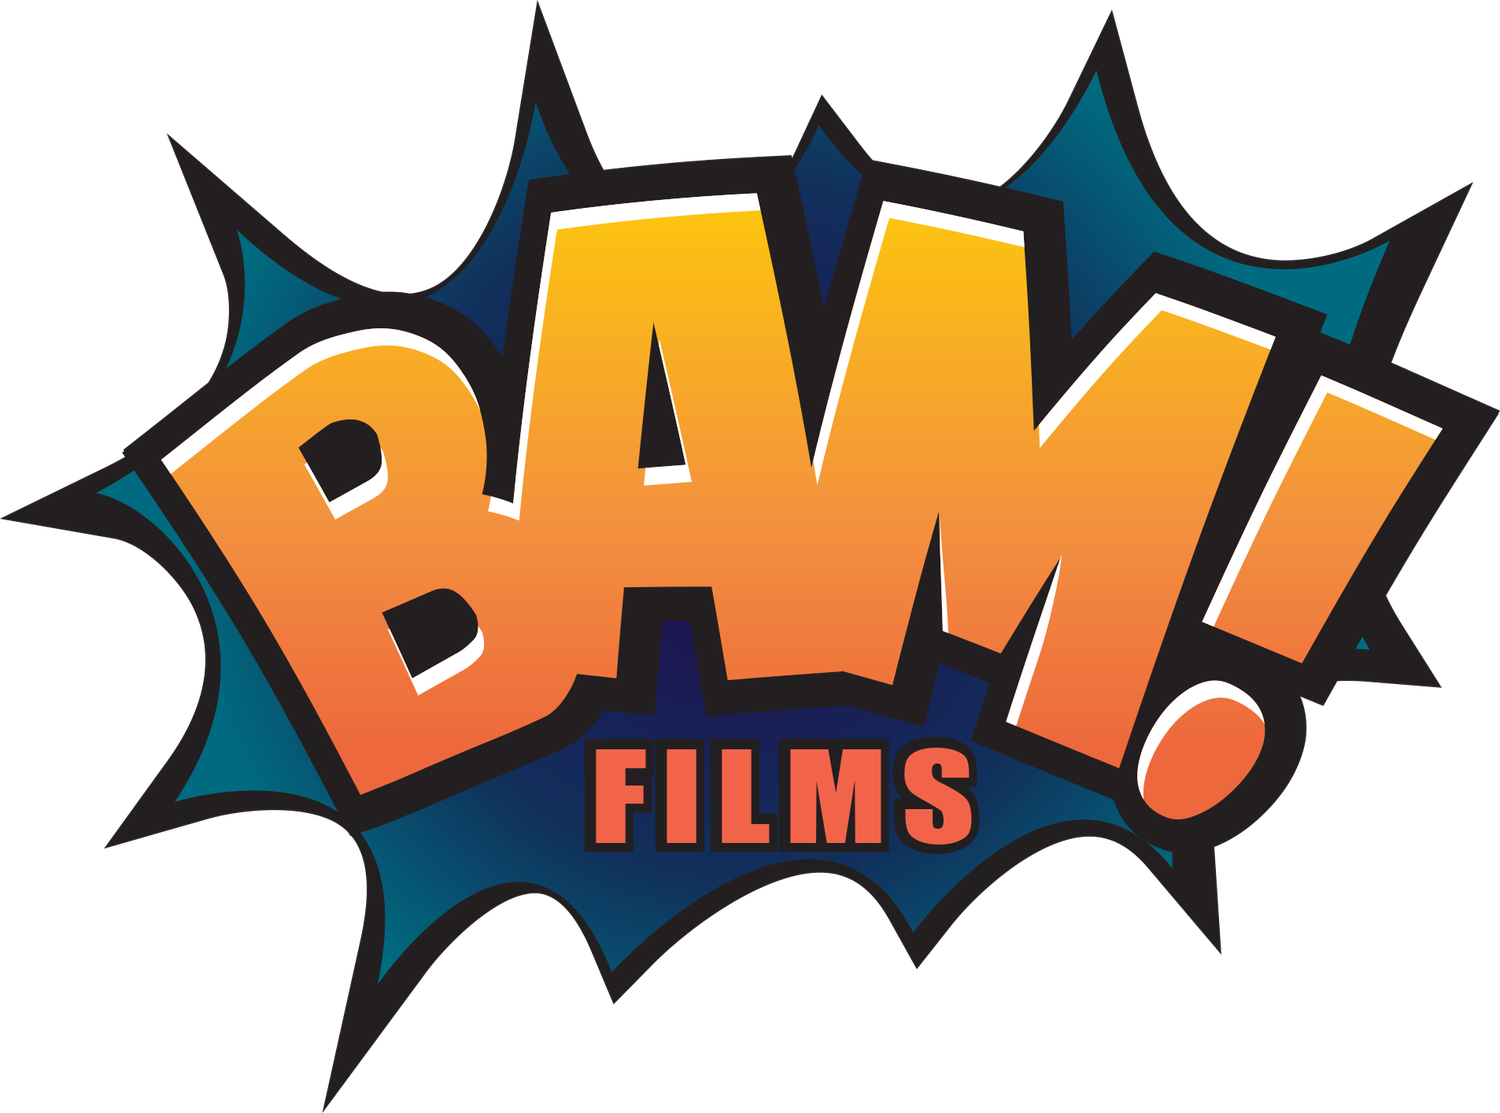 Bam! Films